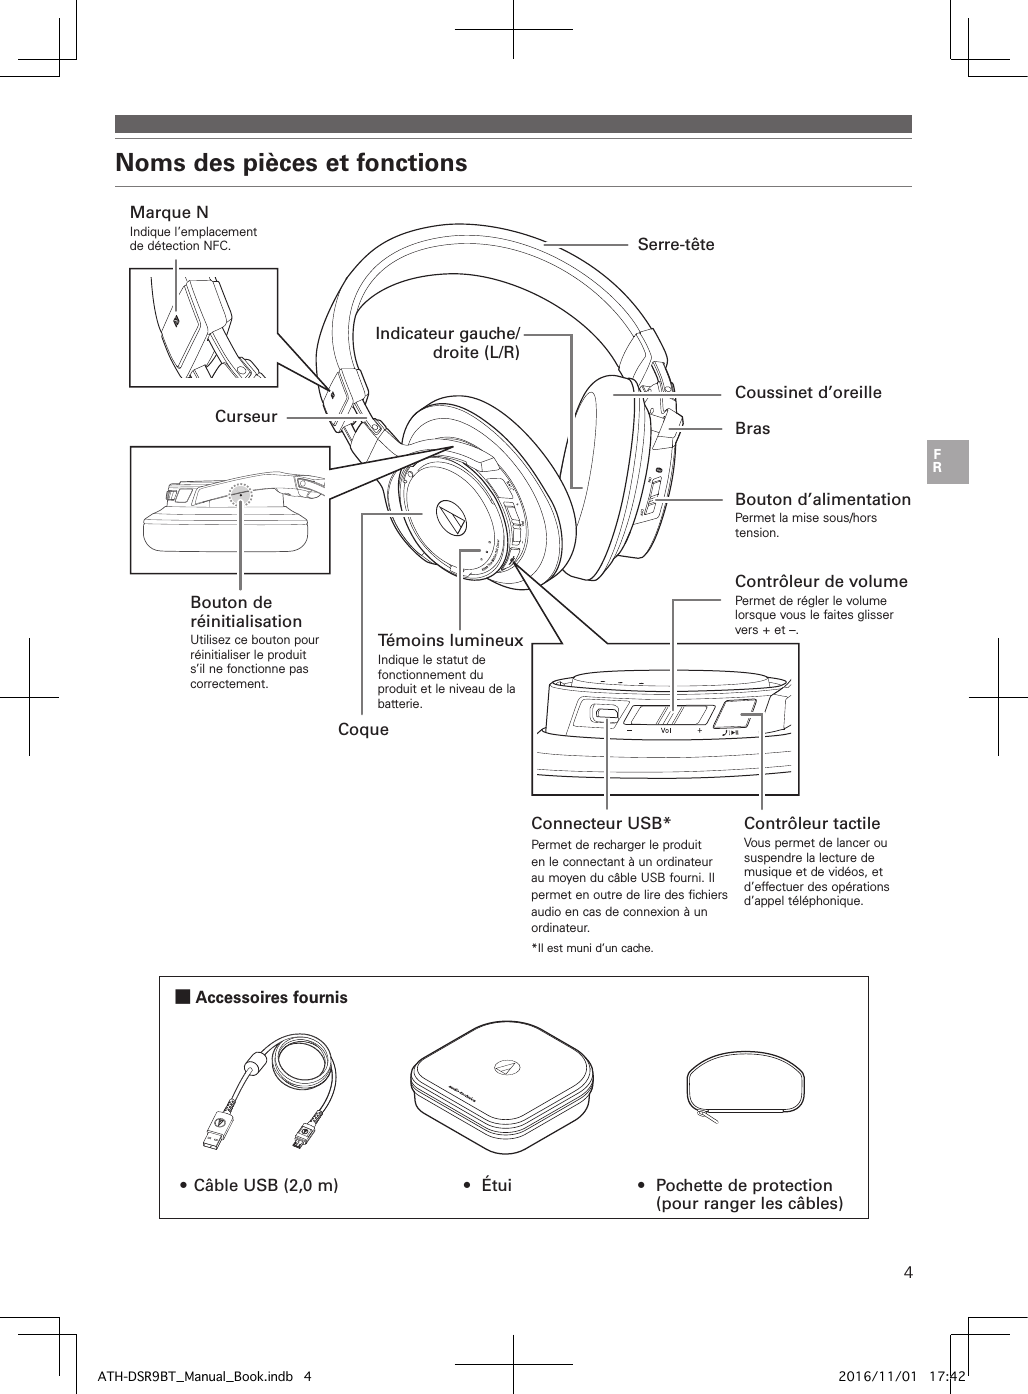 4Noms des pièces et fonctions ■Accessoires fournis•  Câble USB (2,0 m) •  Étui •  Pochette de protection (pour ranger les câbles)Témoins  lumineuxIndique le statut de fonctionnement du produit et le niveau de la batterie.CoqueCurseurMarque NIndique l’emplacement de détection NFC.Coussinet d’oreilleSerre-têteIndicateur gauche/droite (L/R)BrasBouton d’alimentationPermet la mise sous/hors tension.Contrôleur tactileVous permet de lancer ou suspendre la lecture de musique et de vidéos, et d’effectuer des opérations d’appel téléphonique.Connecteur USB*Permet de recharger le produit en le connectant à un ordinateur au moyen du câble USB fourni. Il permet en outre de lire des fichiers audio en cas de connexion à un ordinateur.*Il est muni d’un cache.Contrôleur de volumePermet de régler le volume lorsque vous le faites glisser vers + et –.Bouton de réinitialisationUtilisez ce bouton pour réinitialiser le produit s’il ne fonctionne pas correctement.ATH-DSR9BT_Manual_Book.indb   4 2016/11/01   17:42